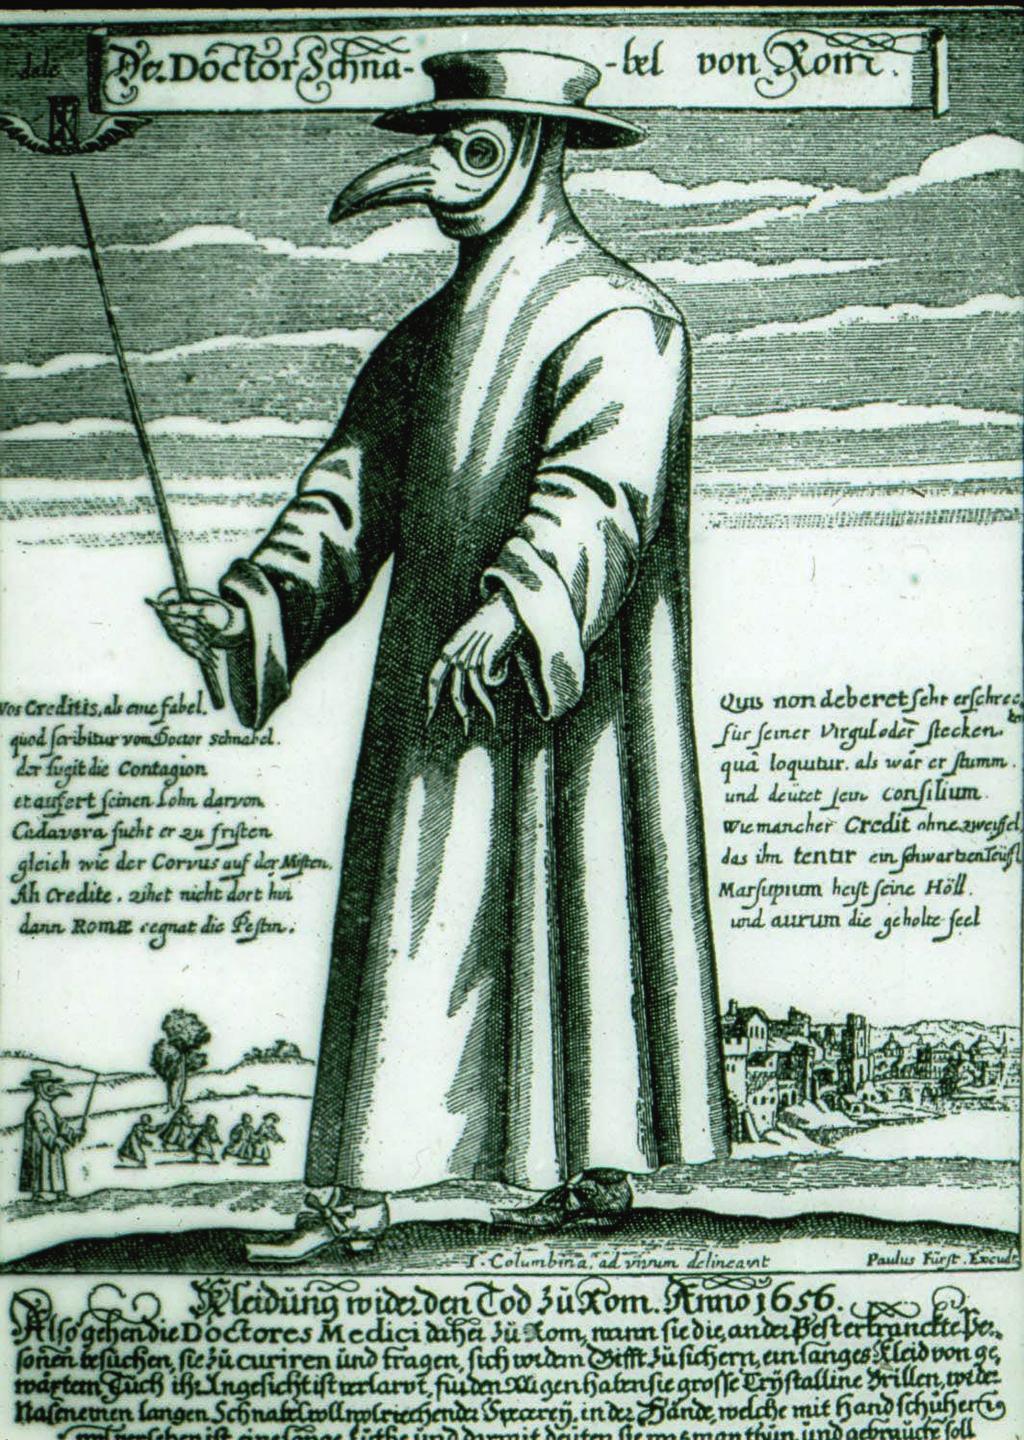 Pestarzt in Schutzkleidung, Kupferstich 1636.